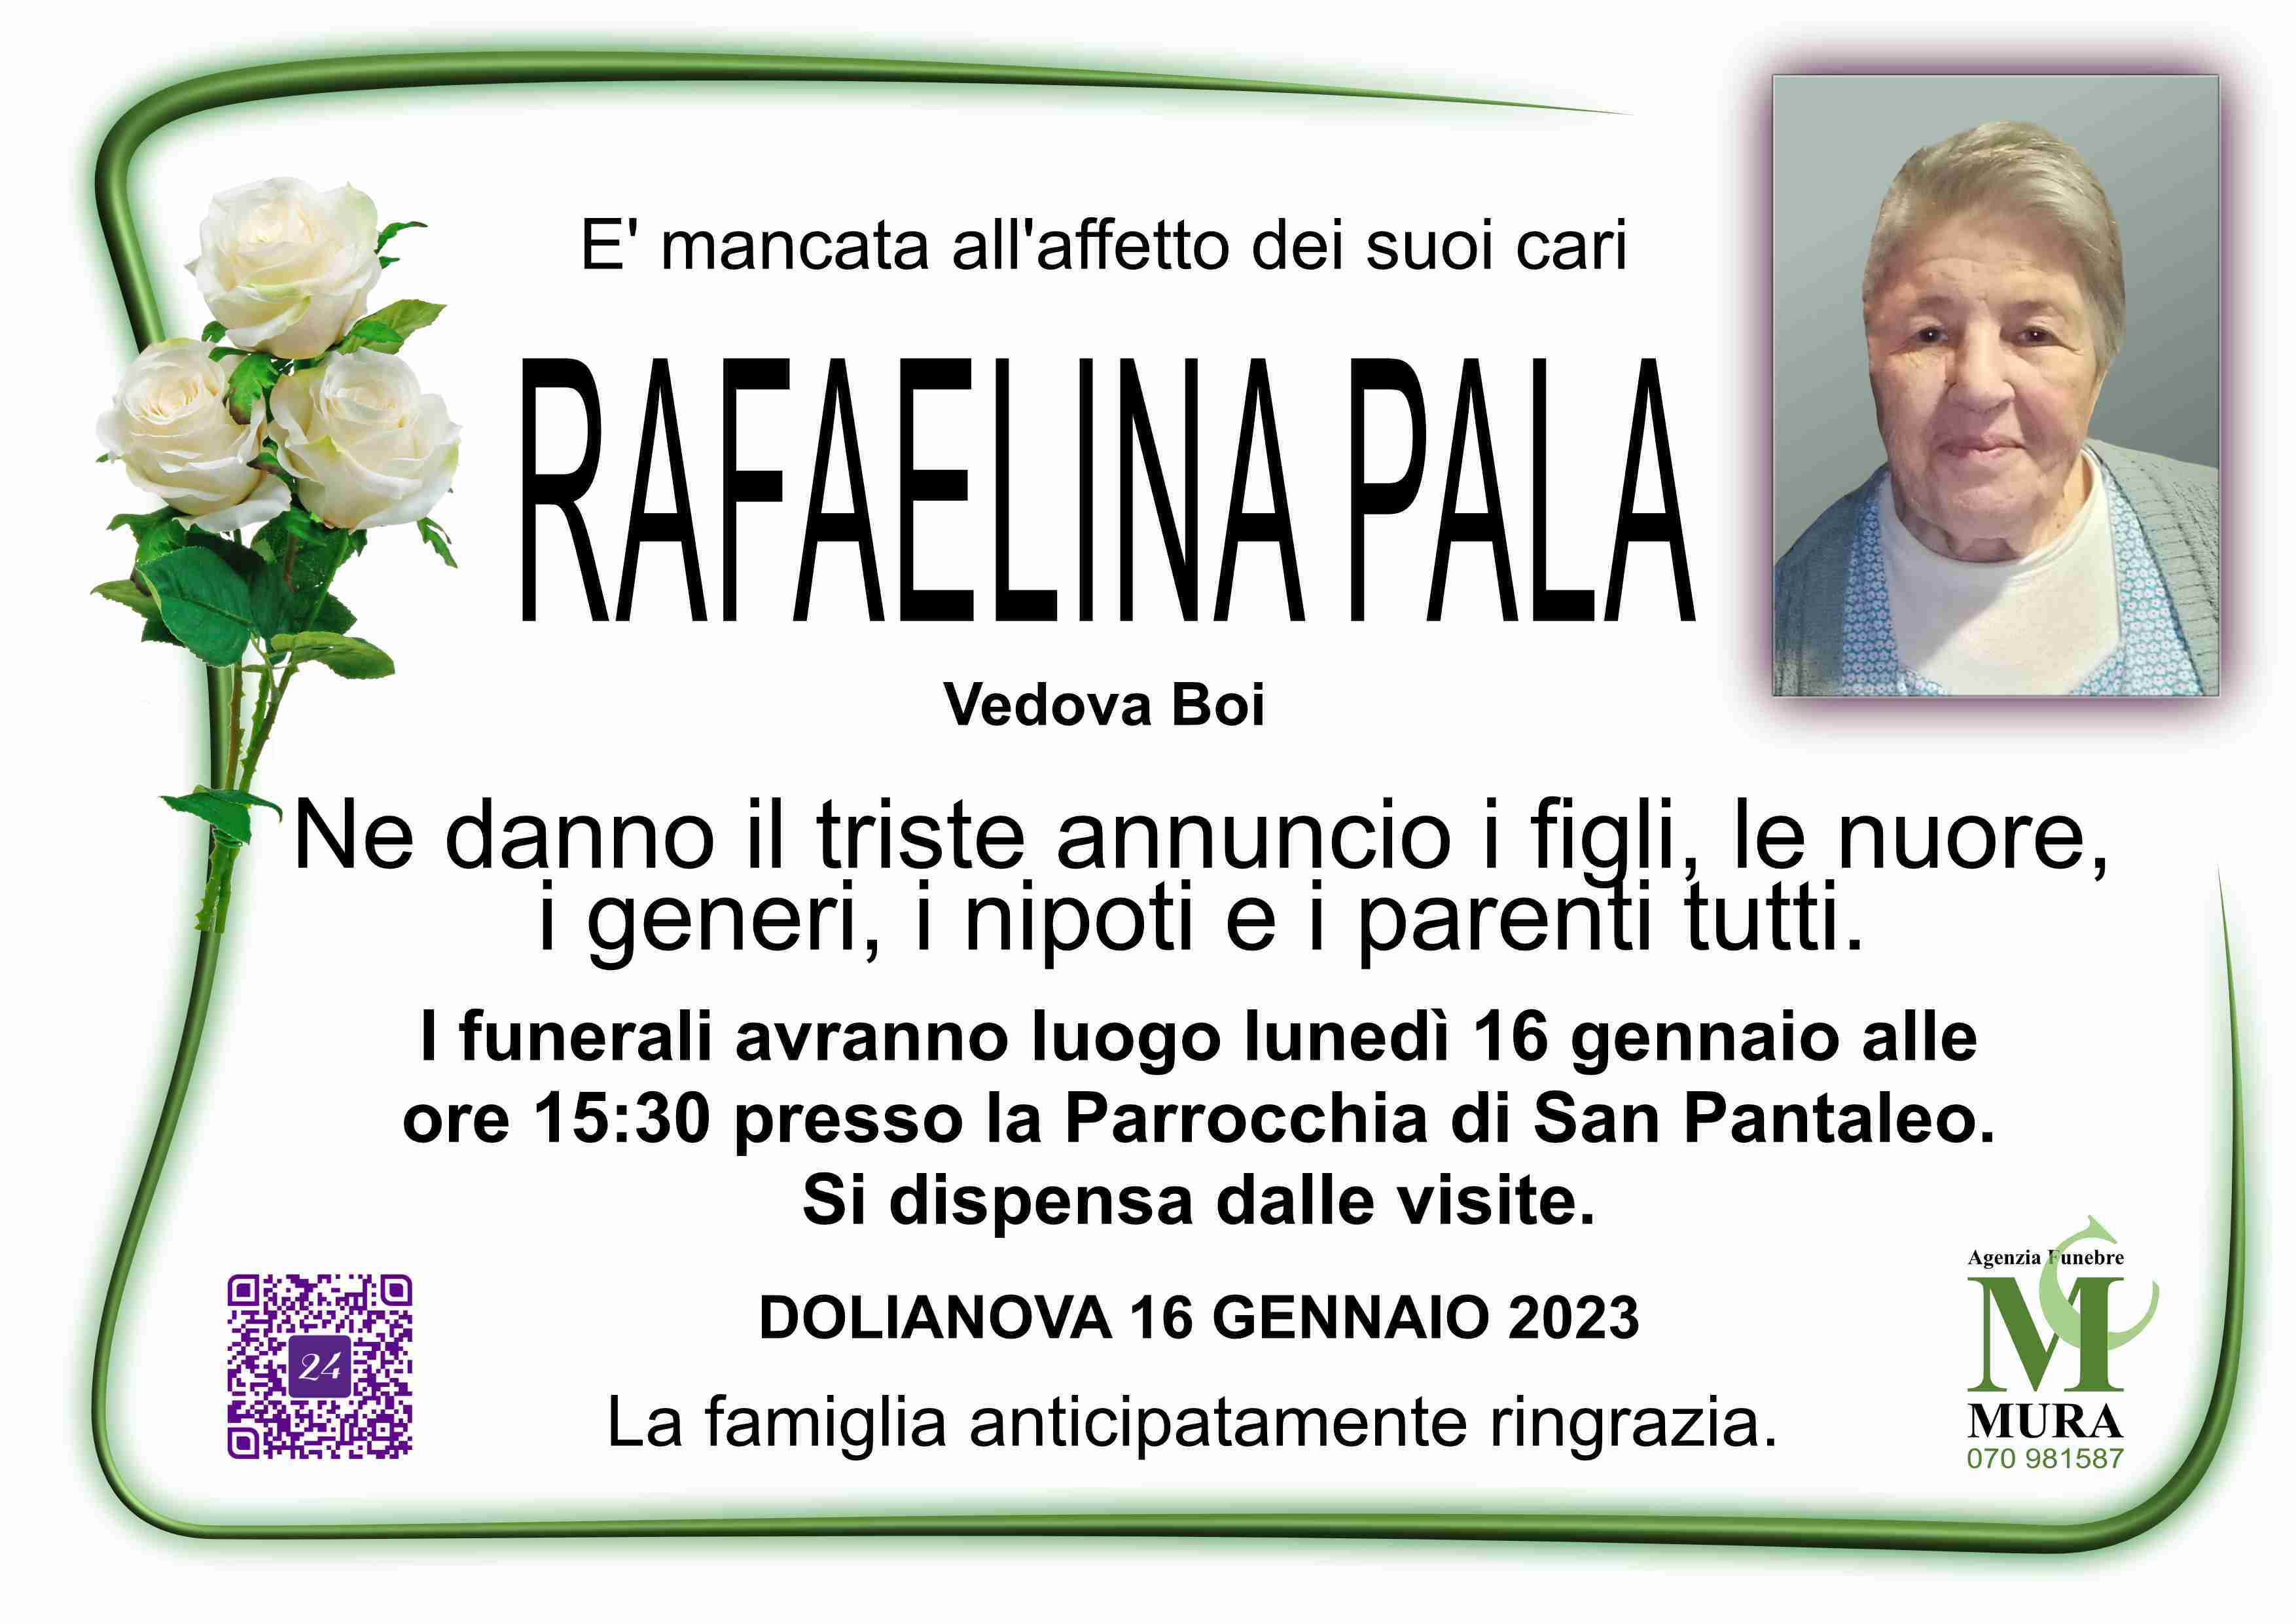 Rafaelina Pala